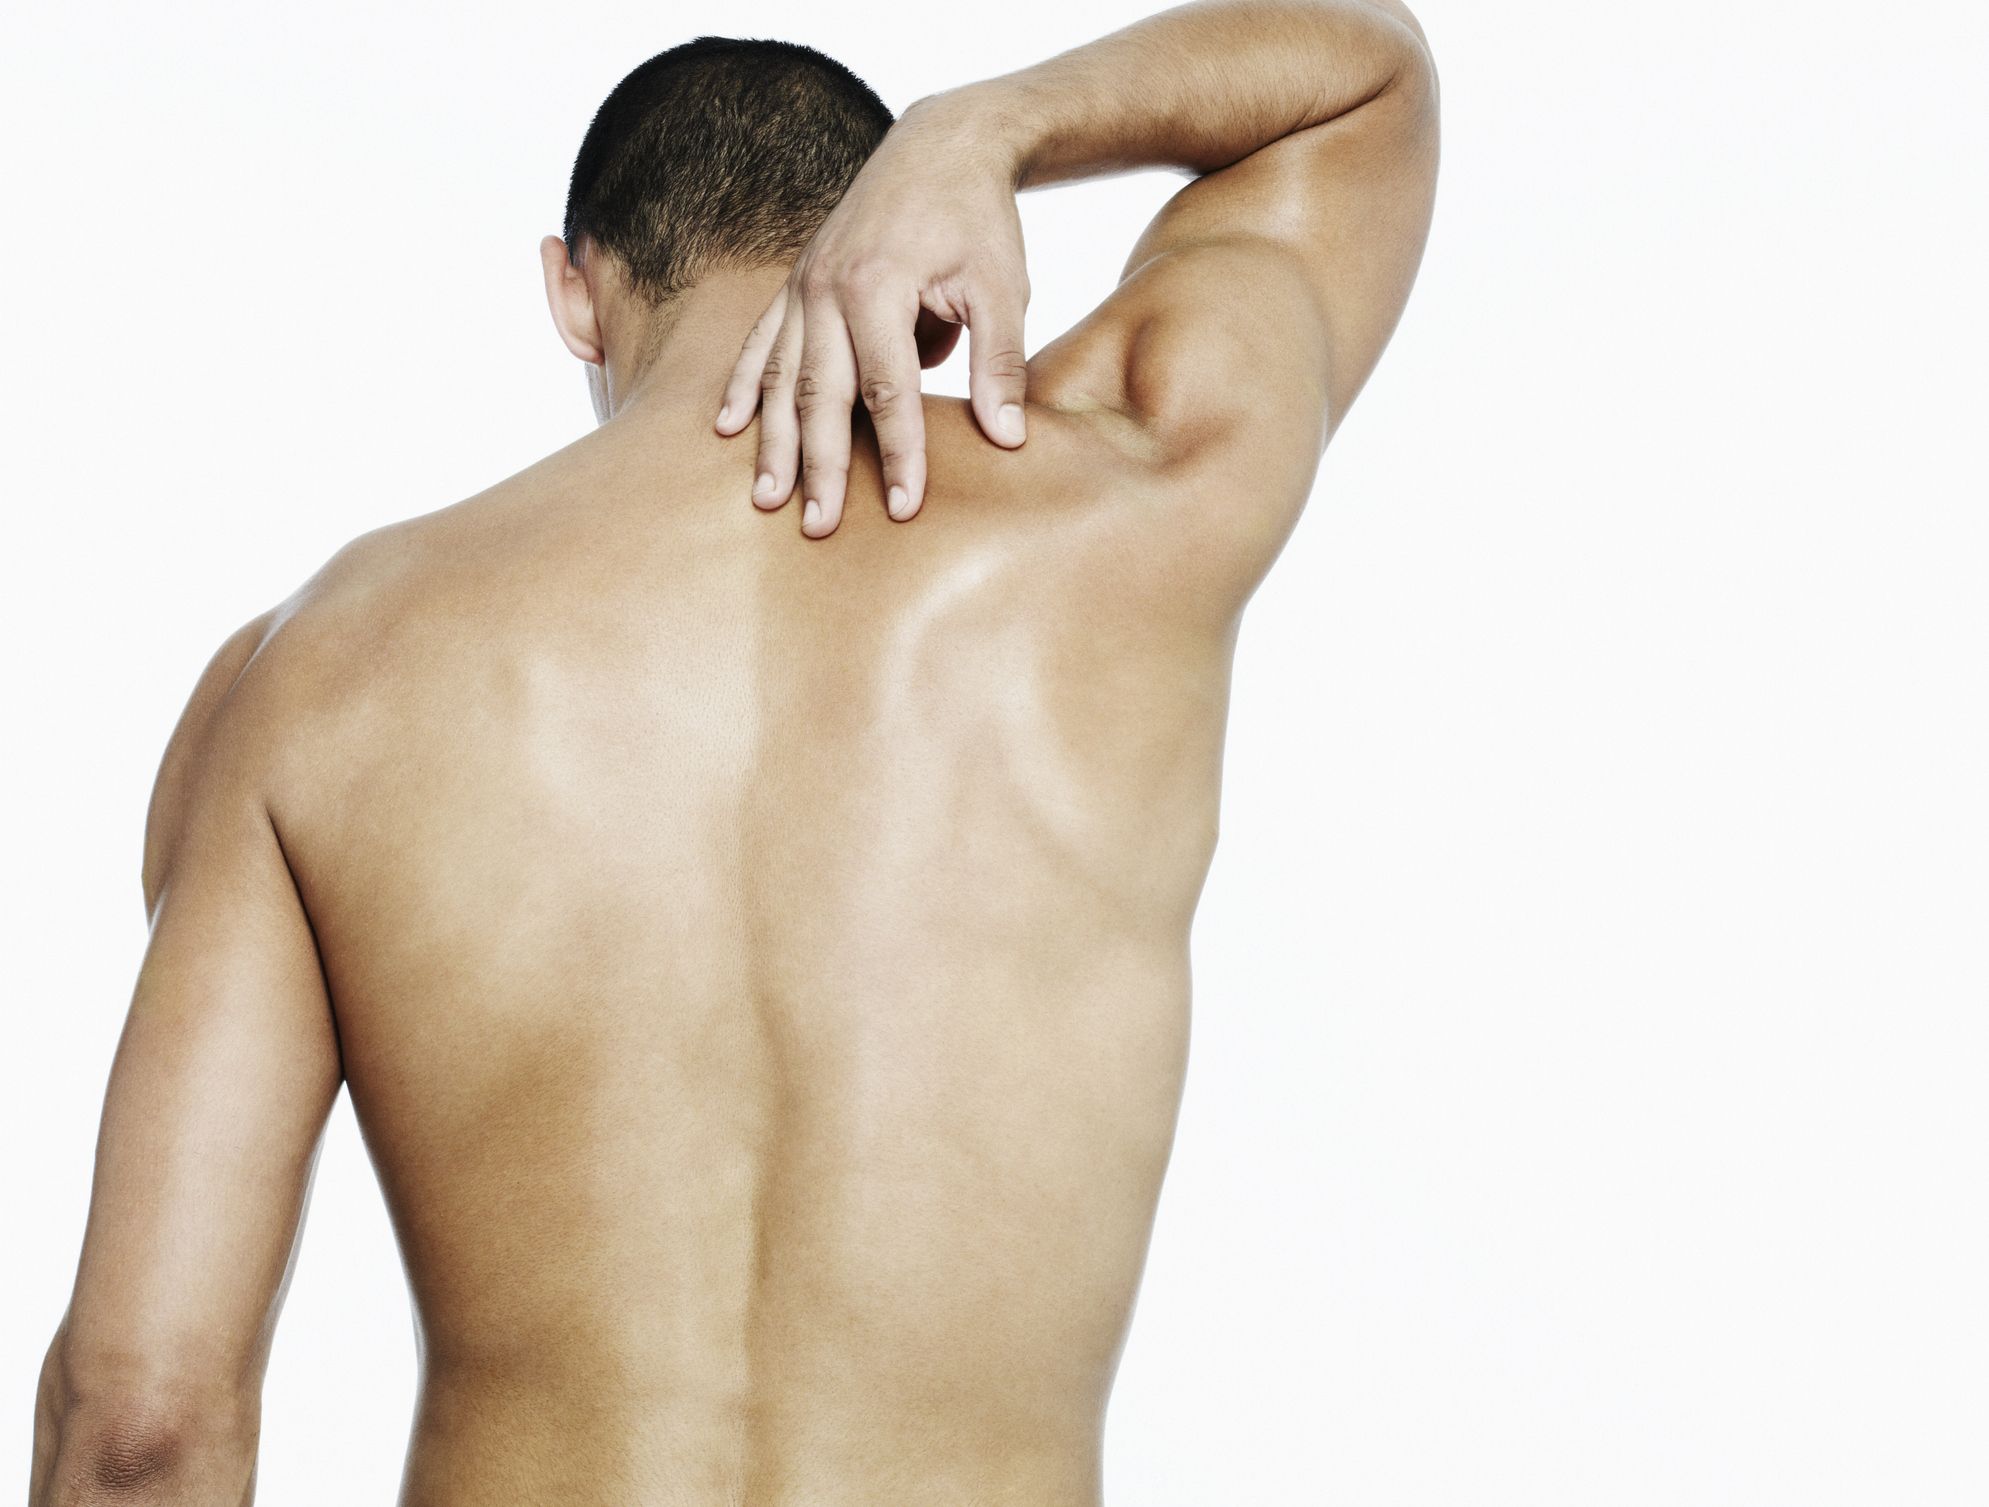 Части поясницы. Спина. Боль в спине. Фото со спины. Ногтями по мужской спине.